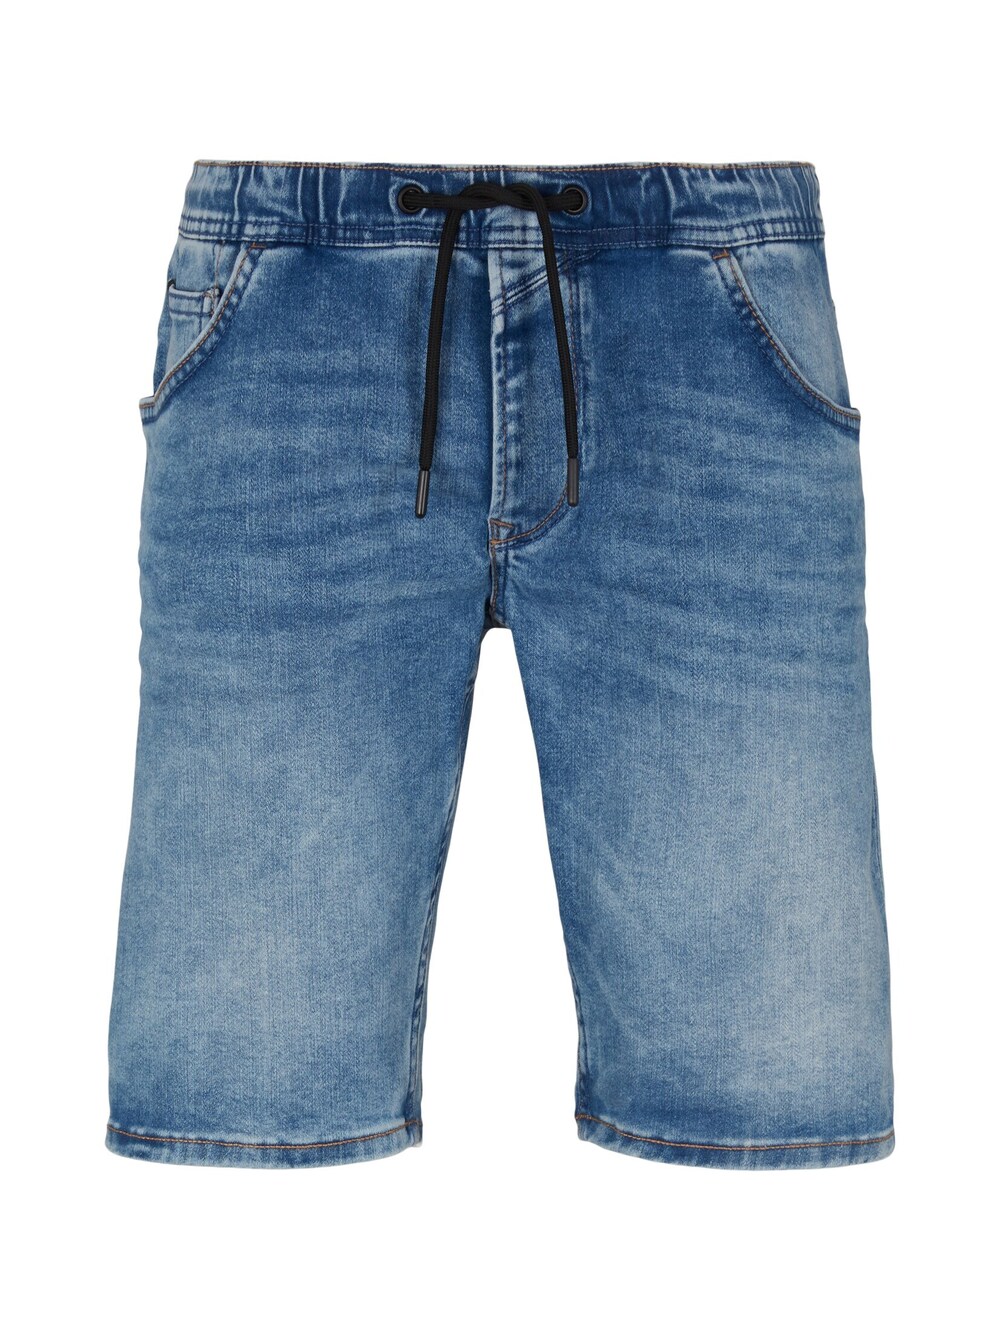 Обычные джинсы Tom Tailor, синий